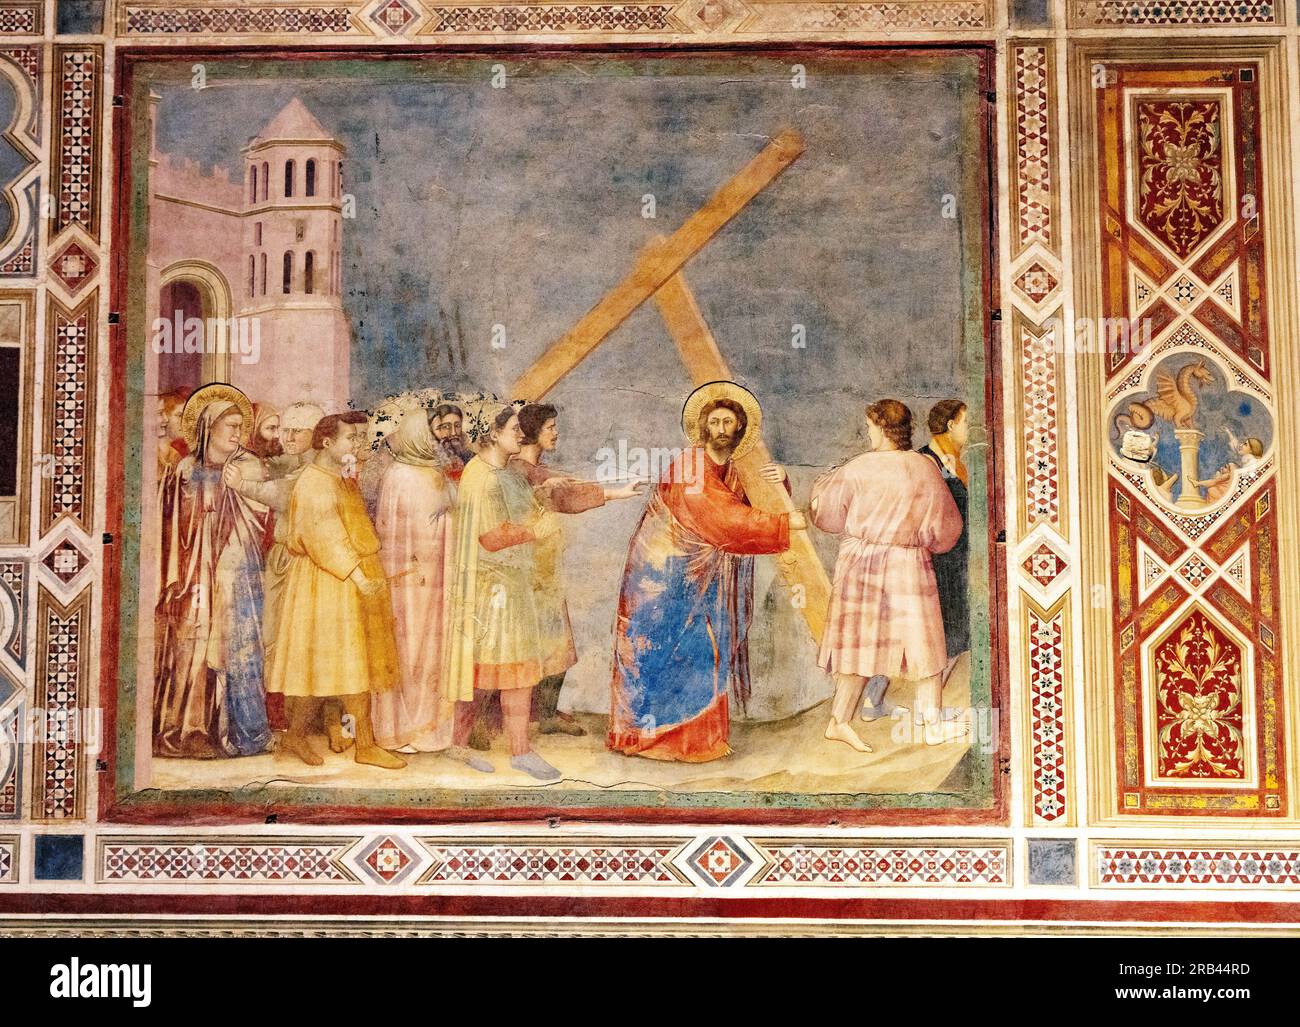 Giotto Fresco, die Scrovegni-Kapelle, Padua Italien - 1300s italienische Renaissance-Gemälde des Lebens Christi; hier mit dem Kreuz. Kunstgeschichte Stockfoto